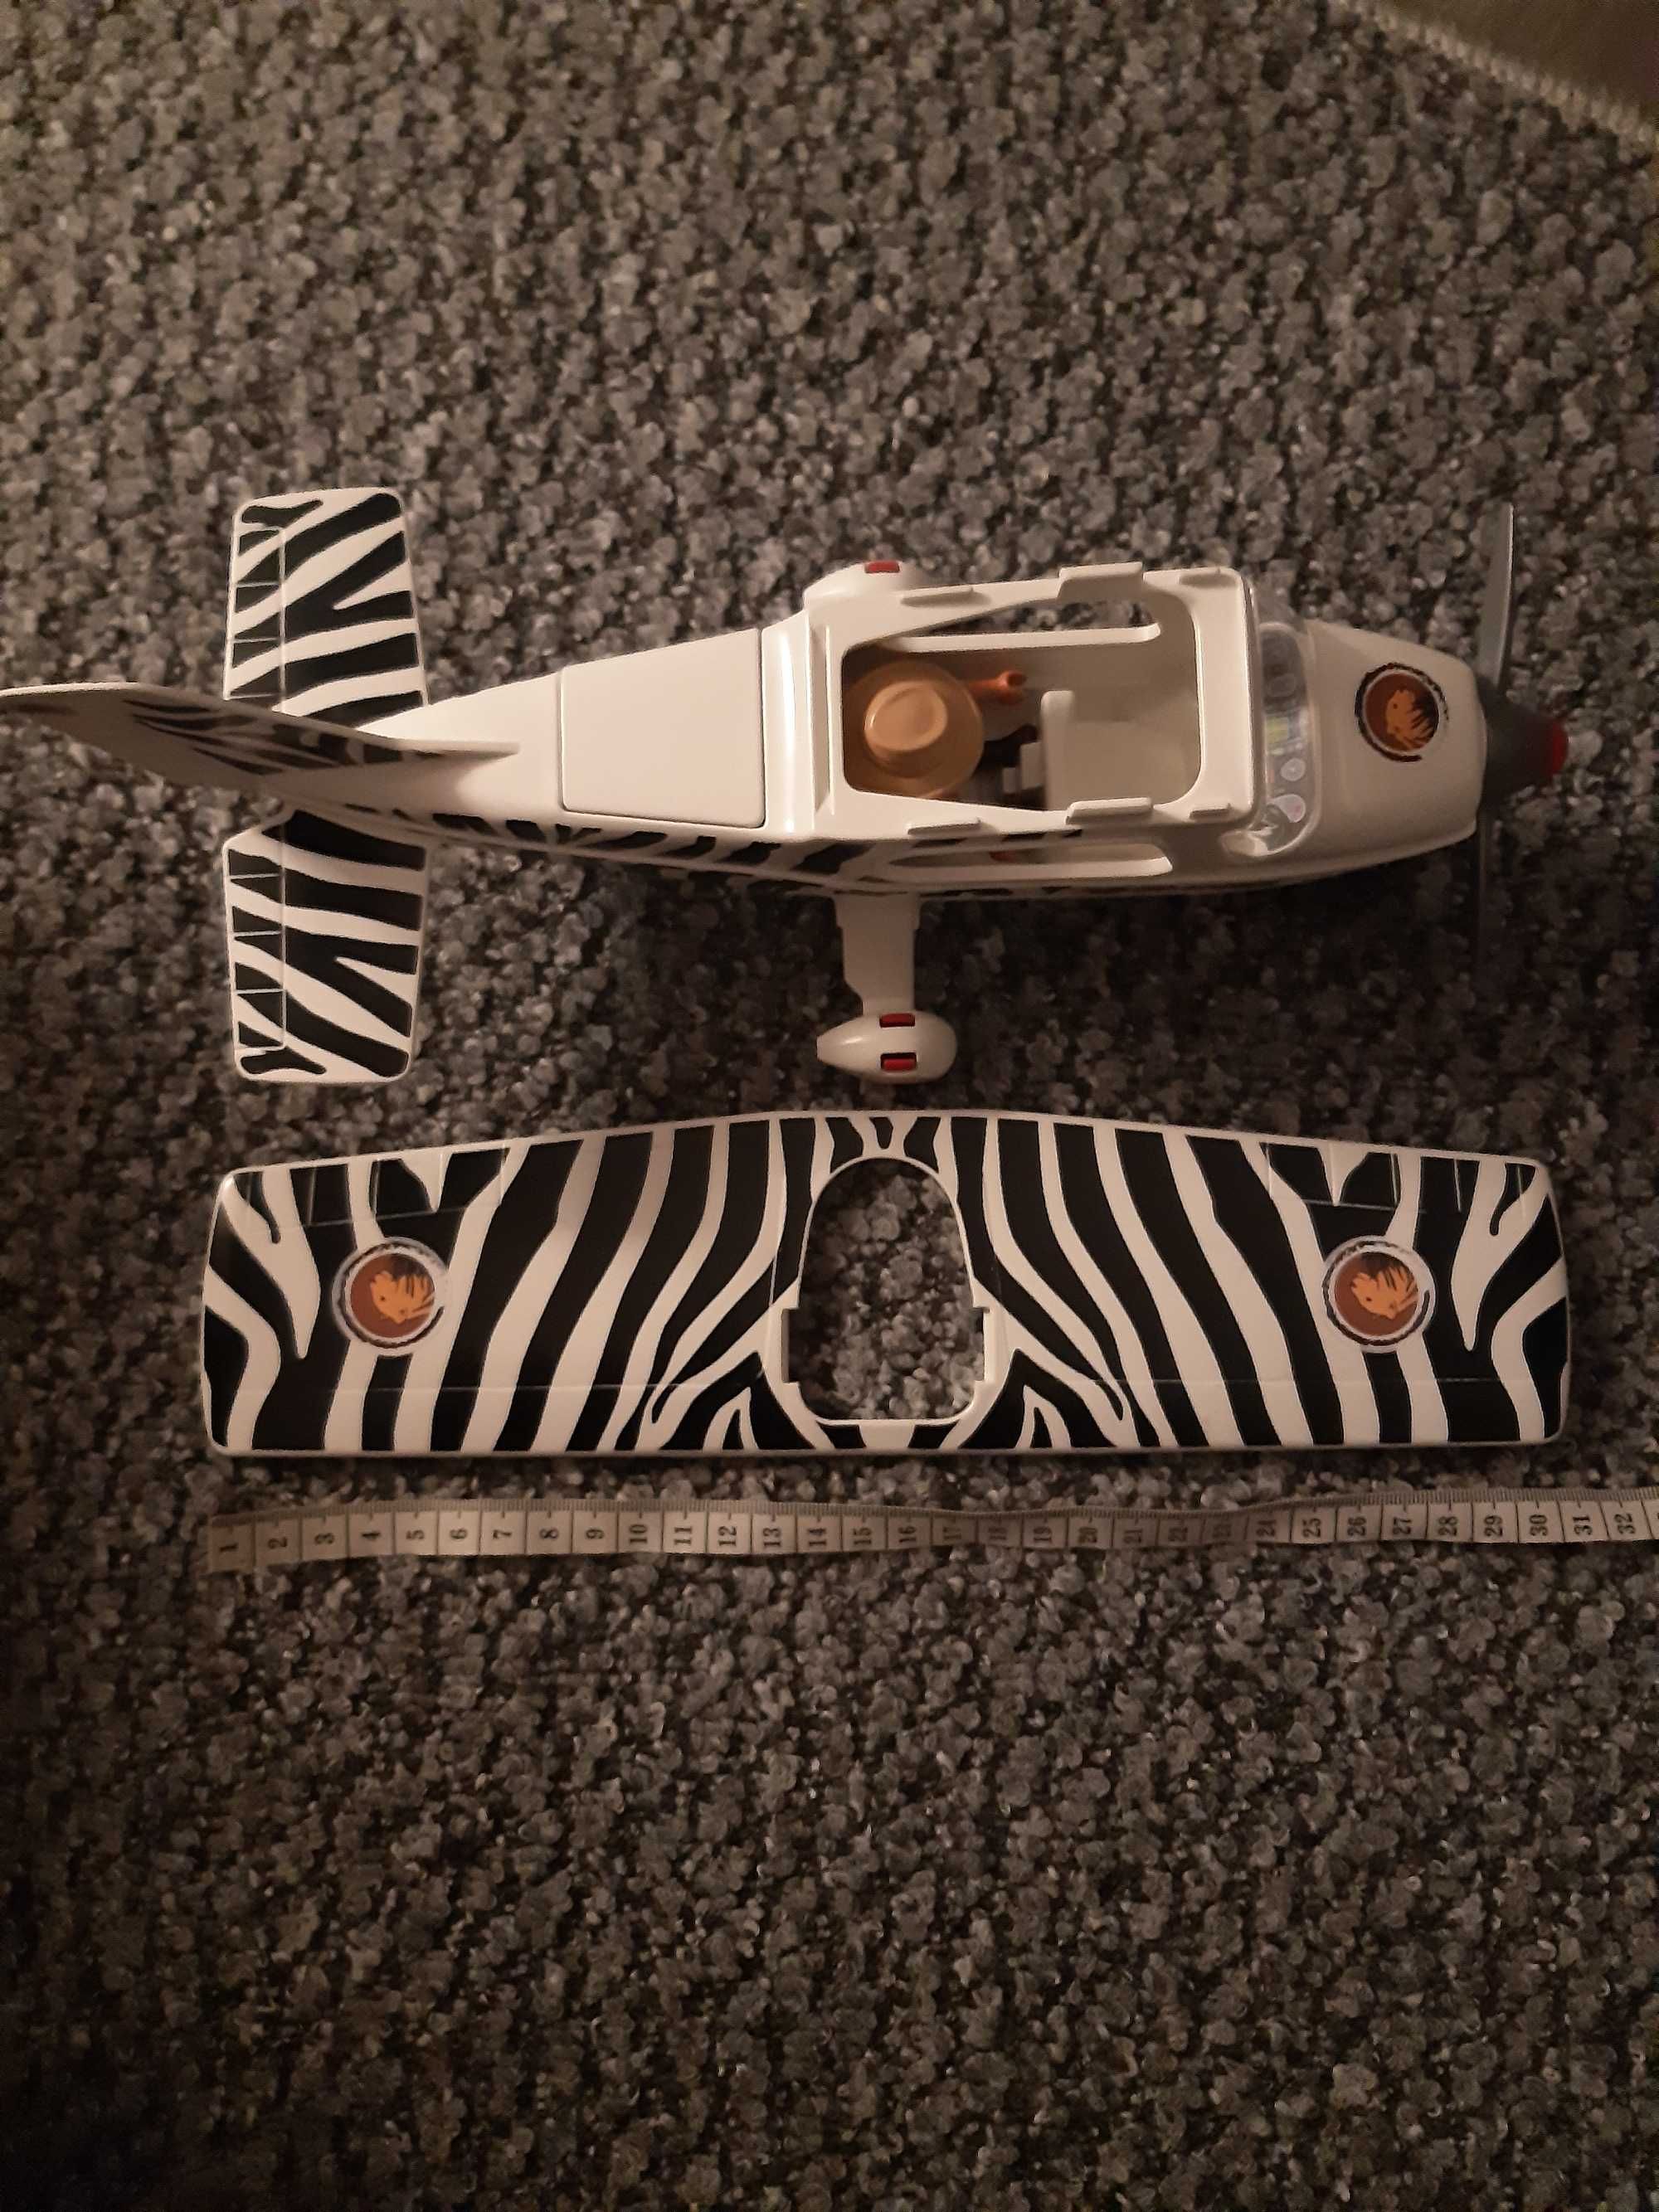 Playmobil 6938 wild life samolot safari